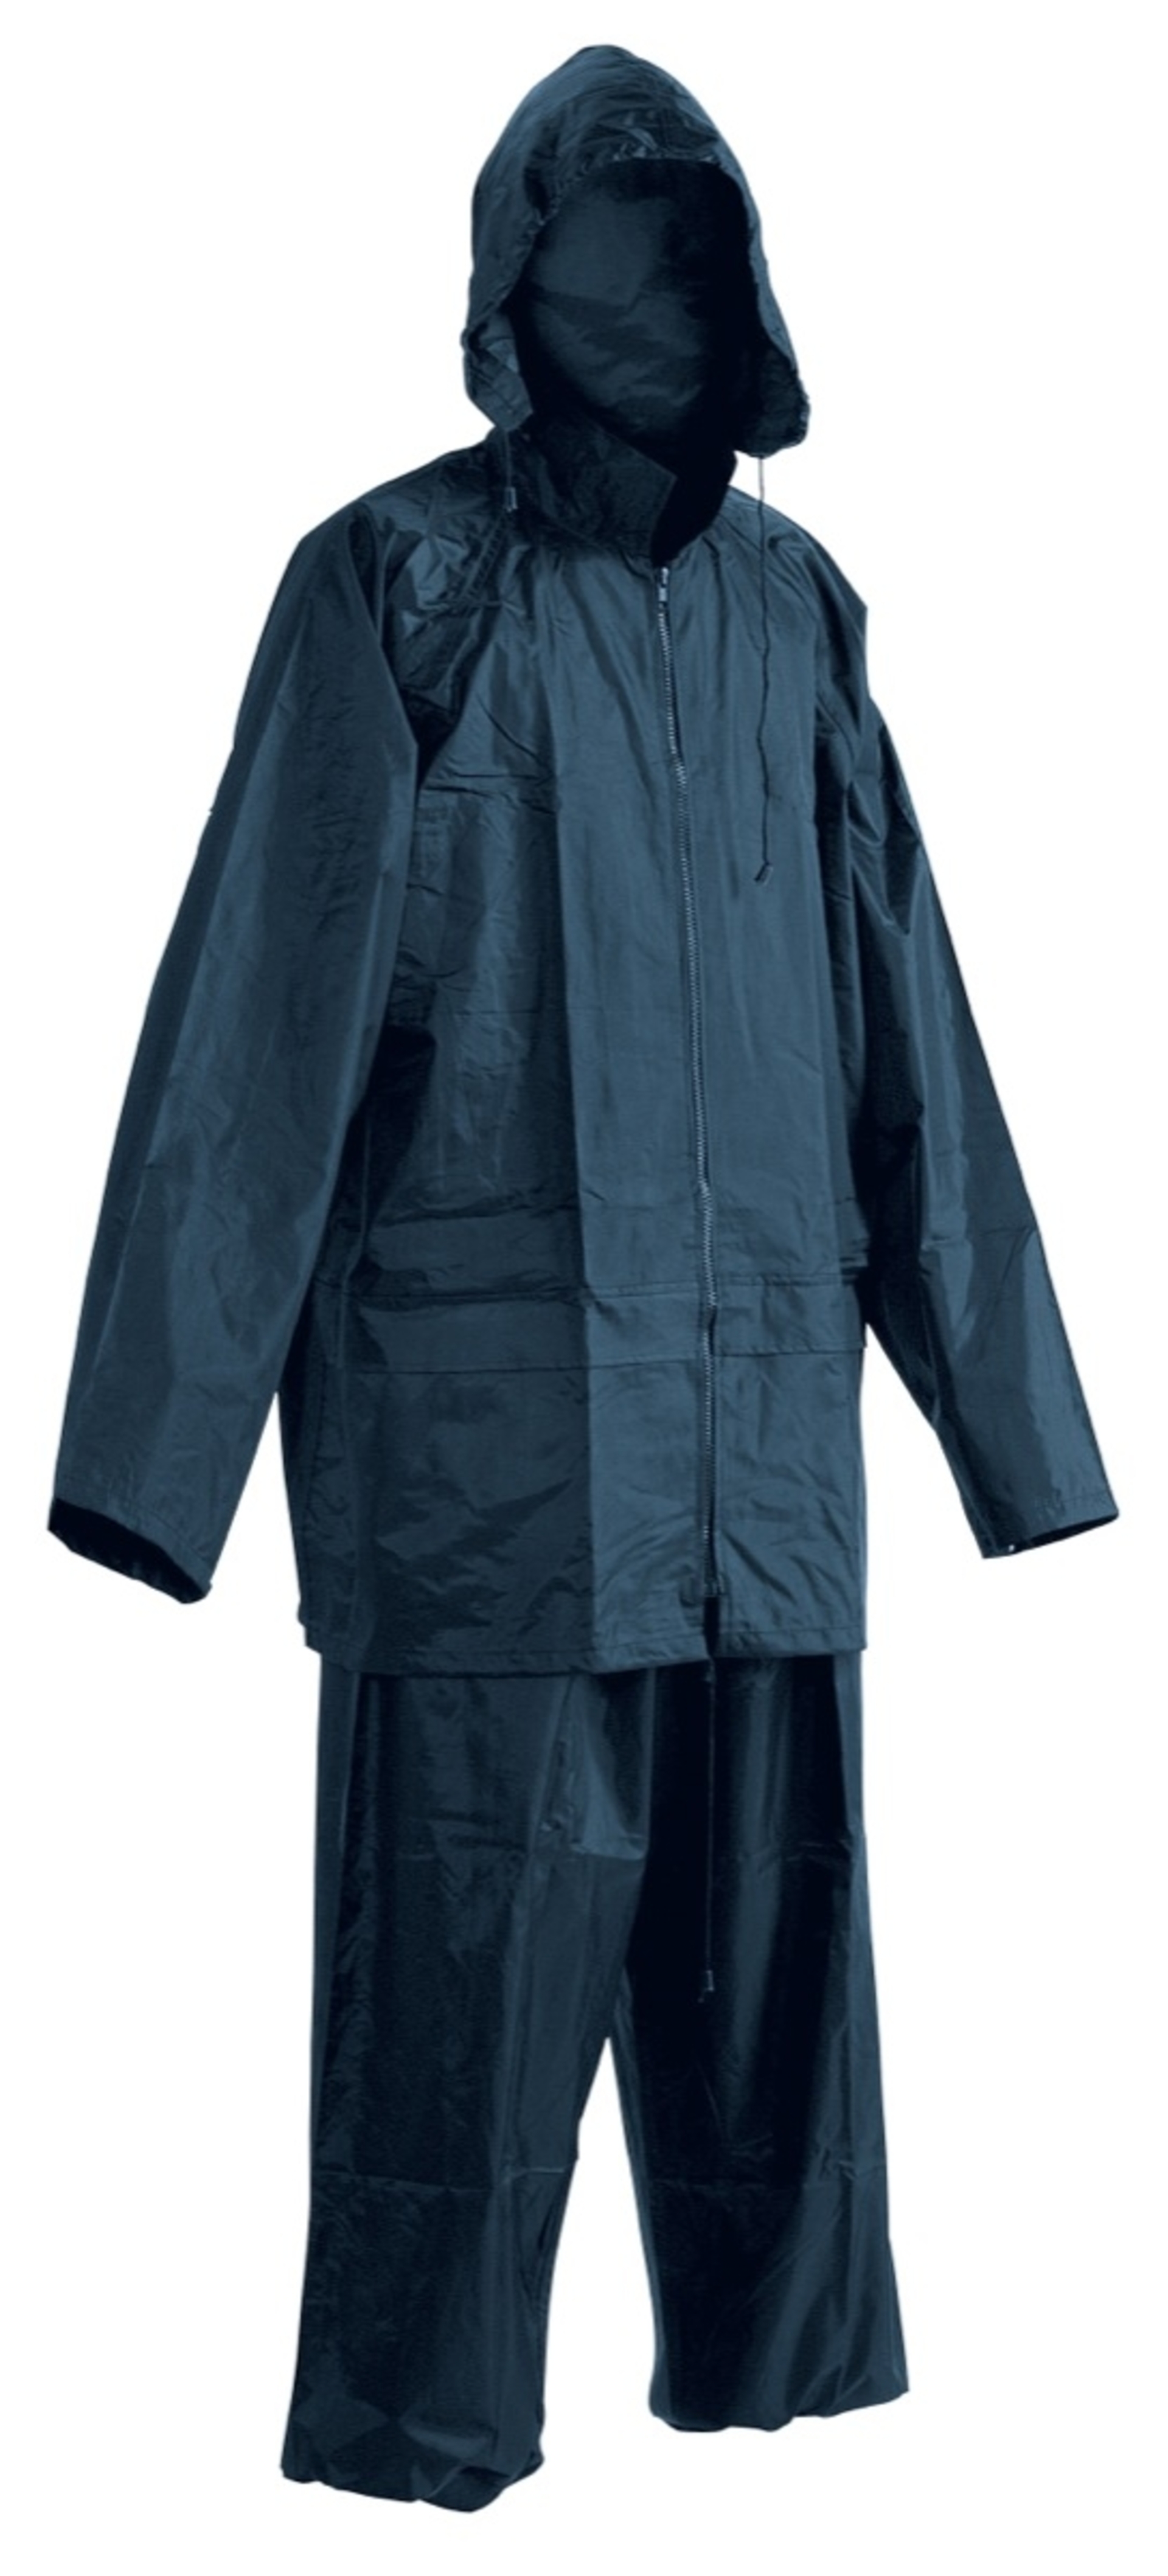 Cerva CARINA Oblek nepromokavý modrá XXL + Bezplatné vrácení zboží